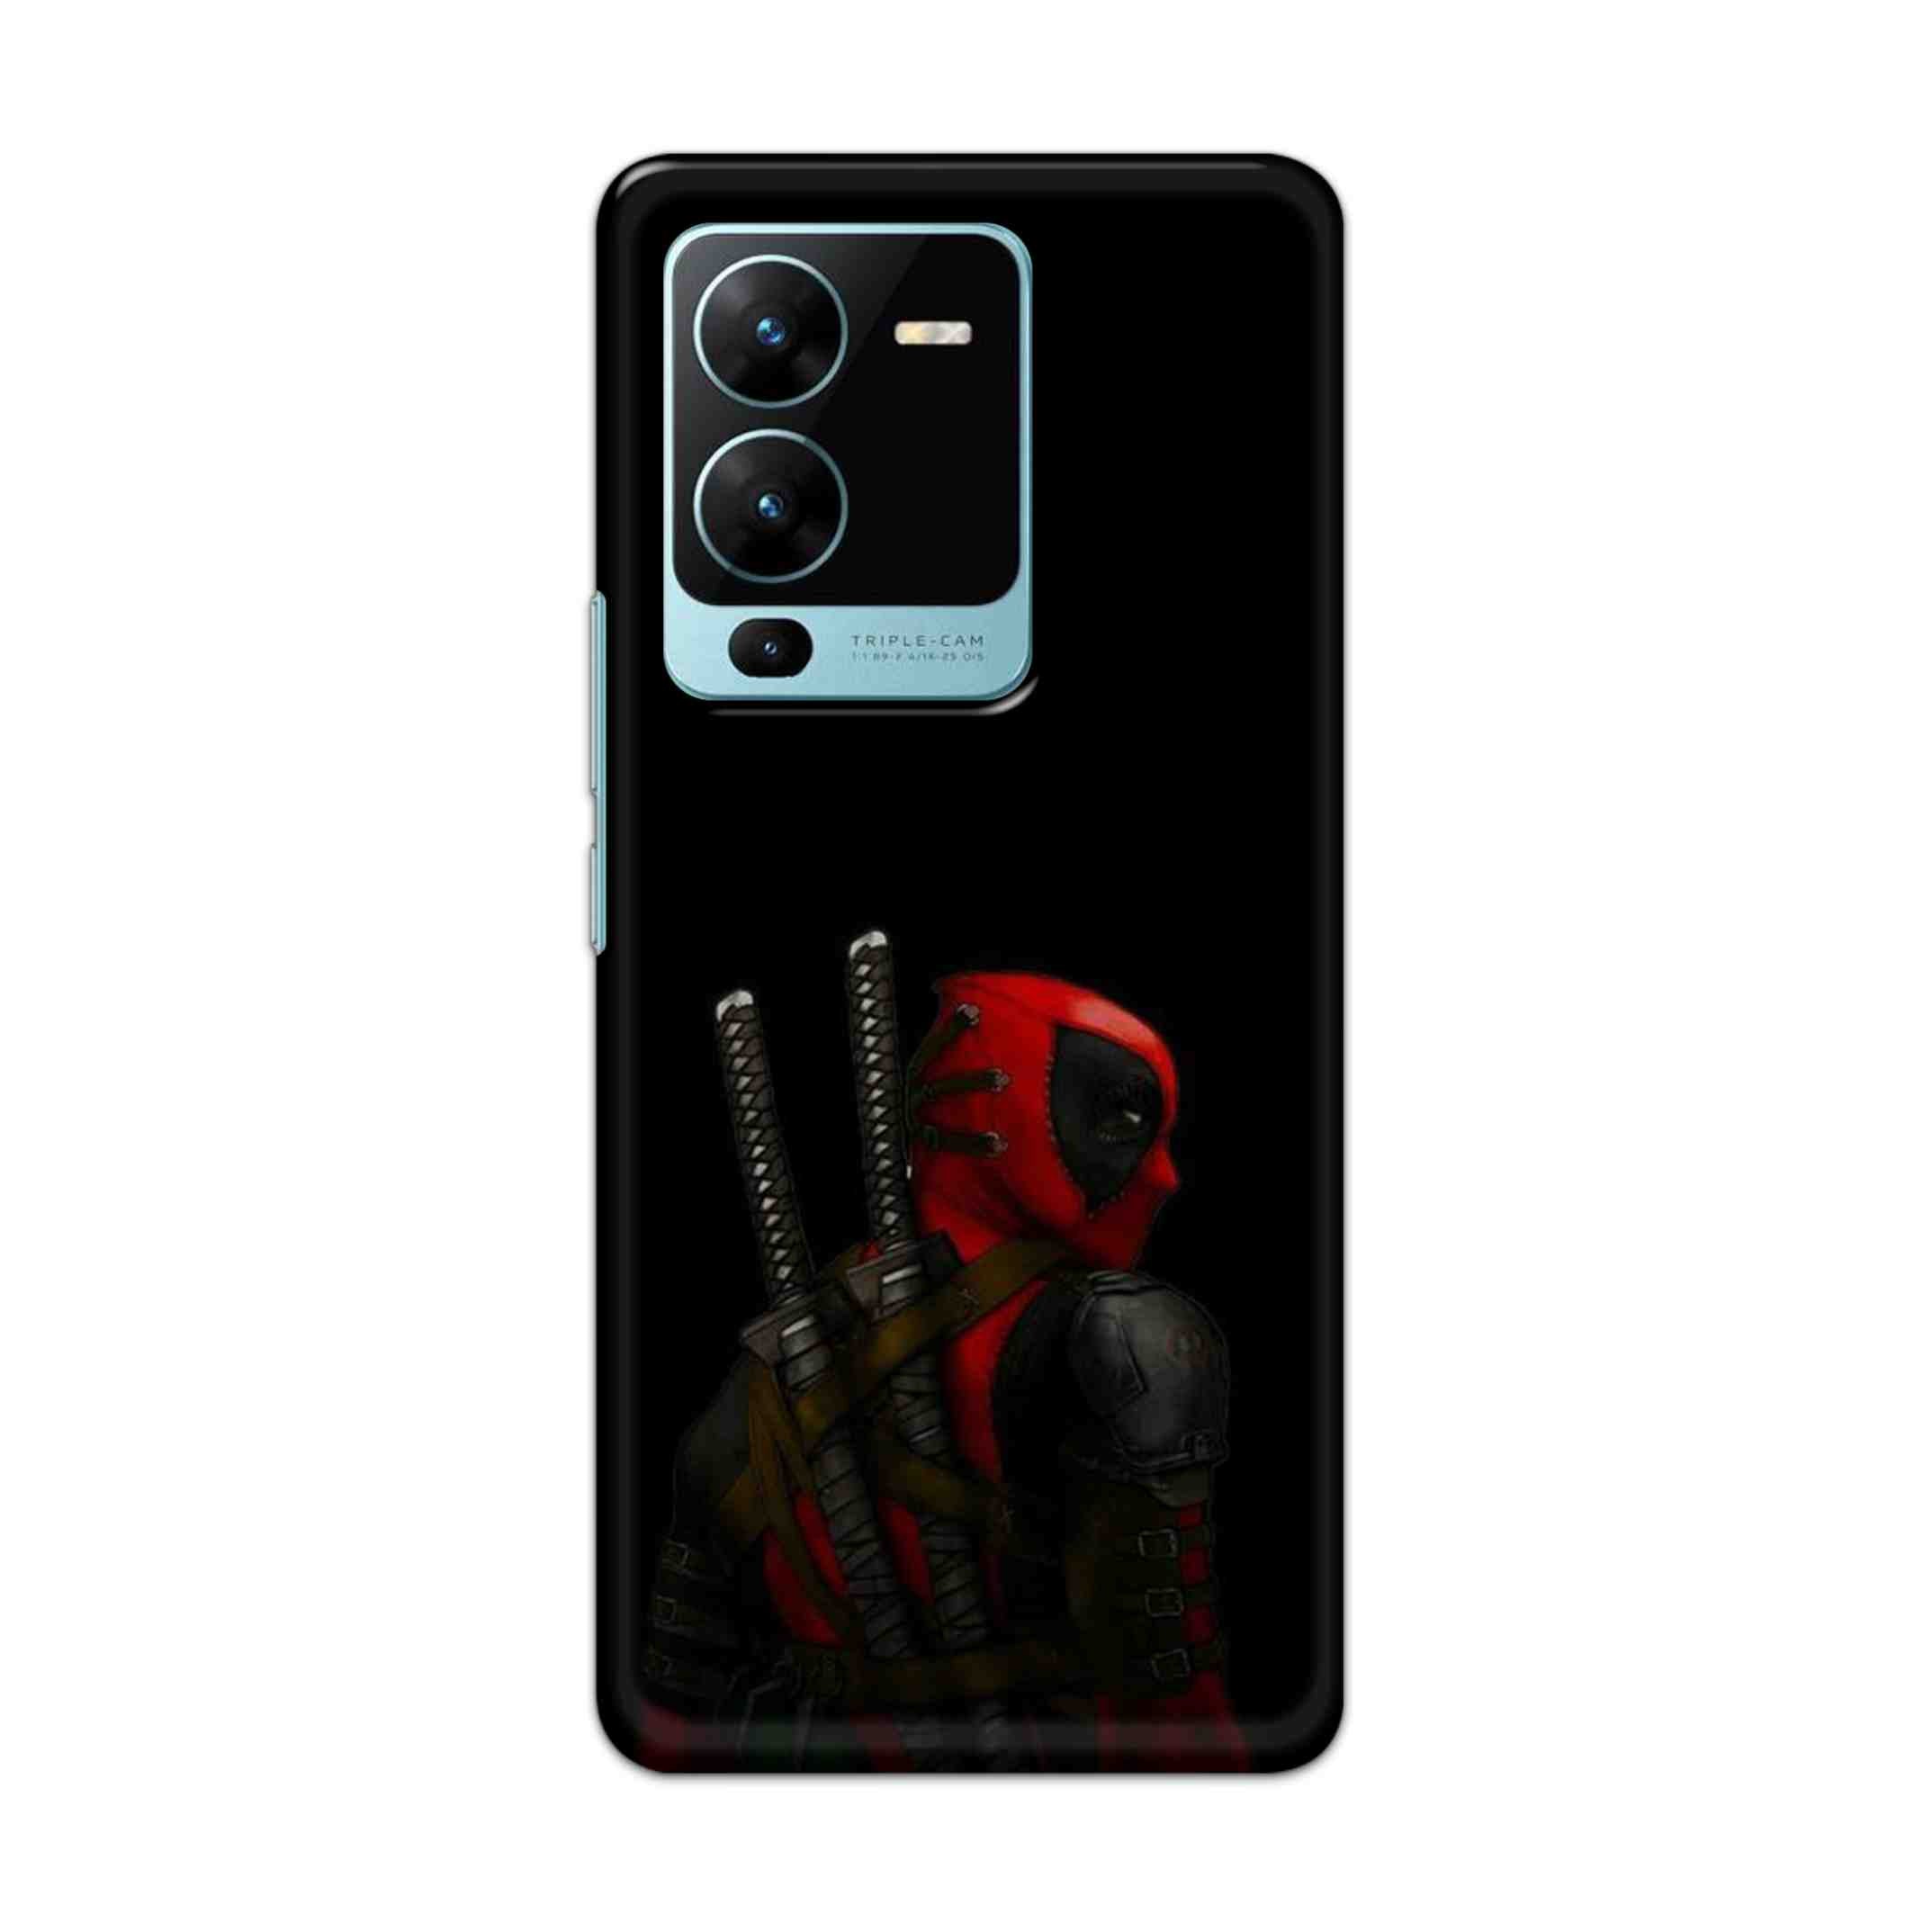 Buy Deadpool Hard Back Mobile Phone Case Cover For Vivo V25 Pro Online